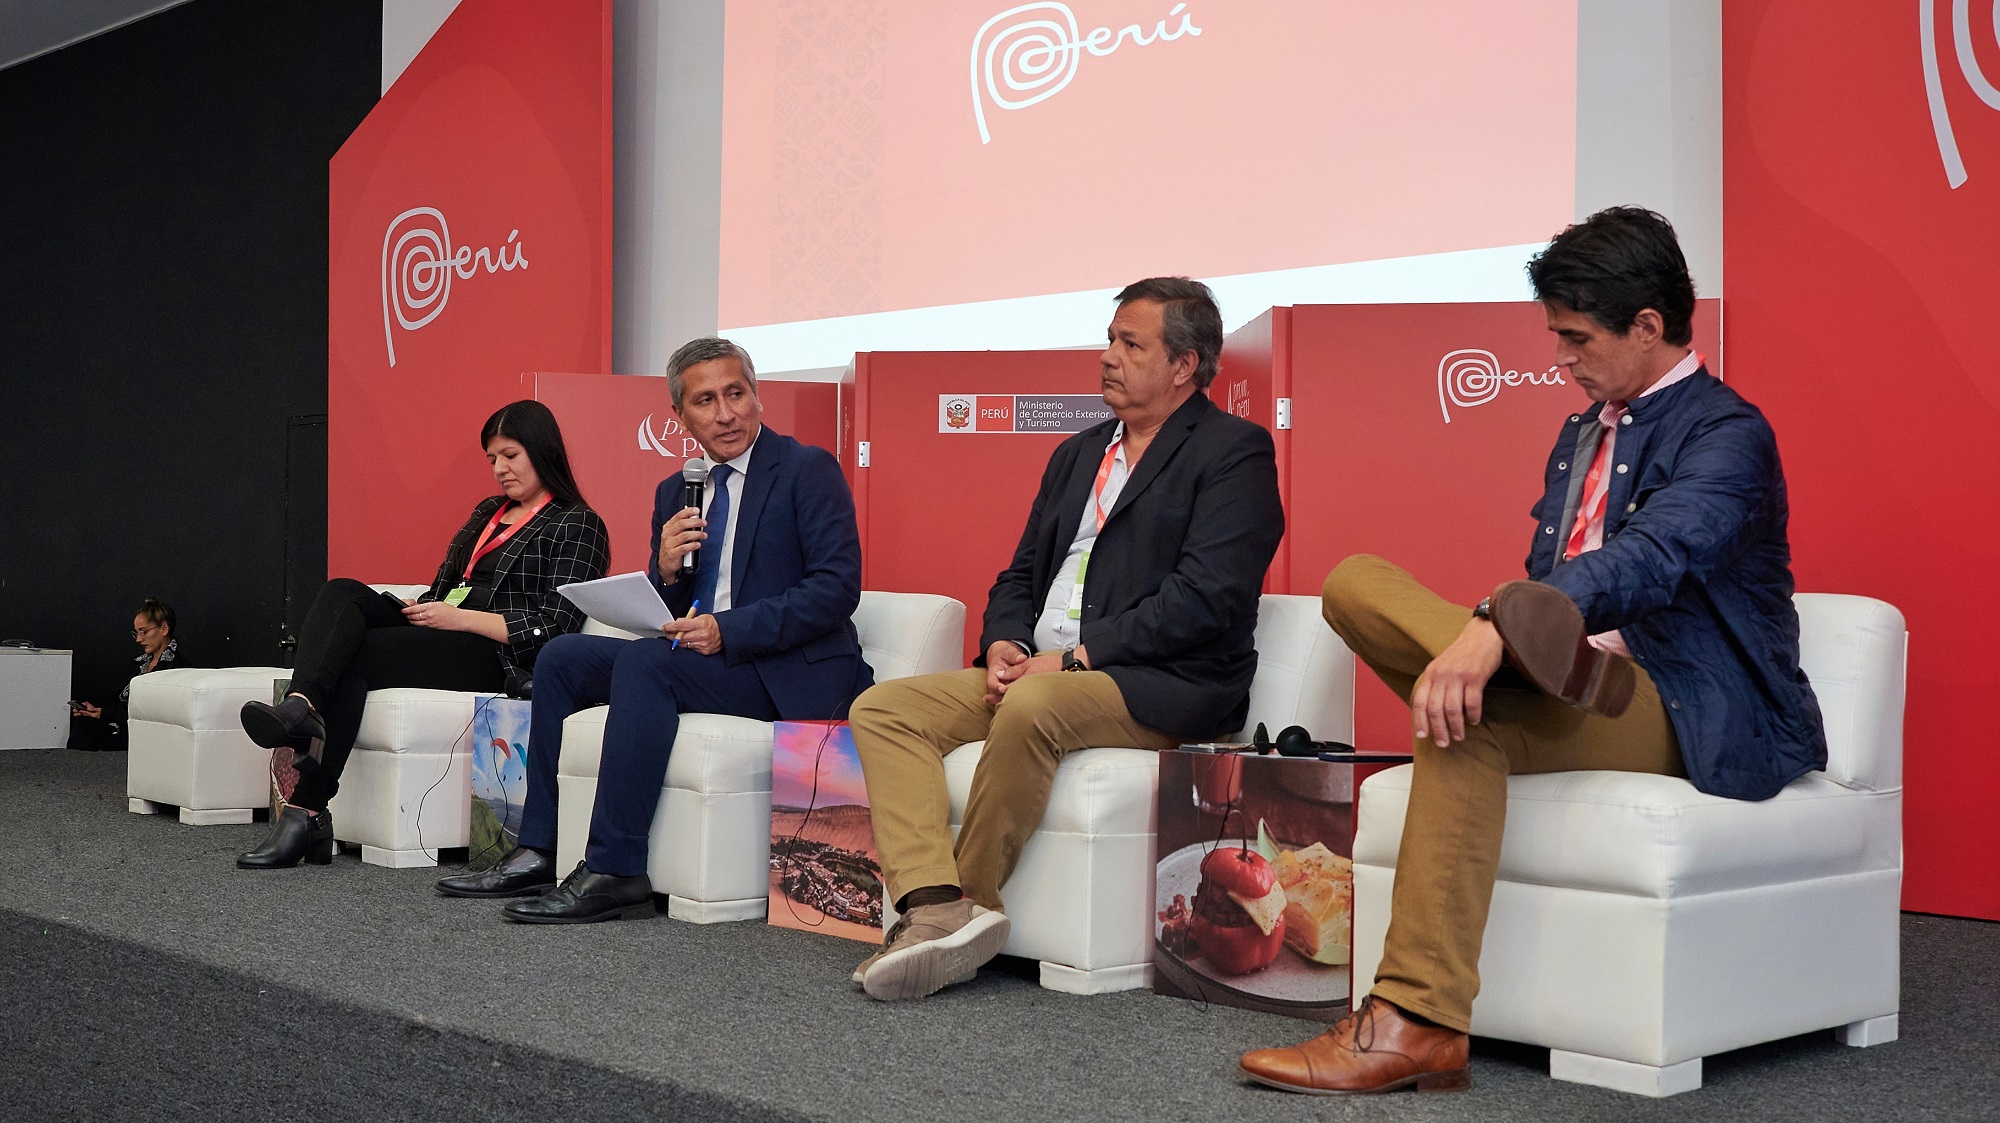 Promperú: II Encuentro de Inversiones en Alta Tecnología se convierte en vitrina internacional para startups peruanas